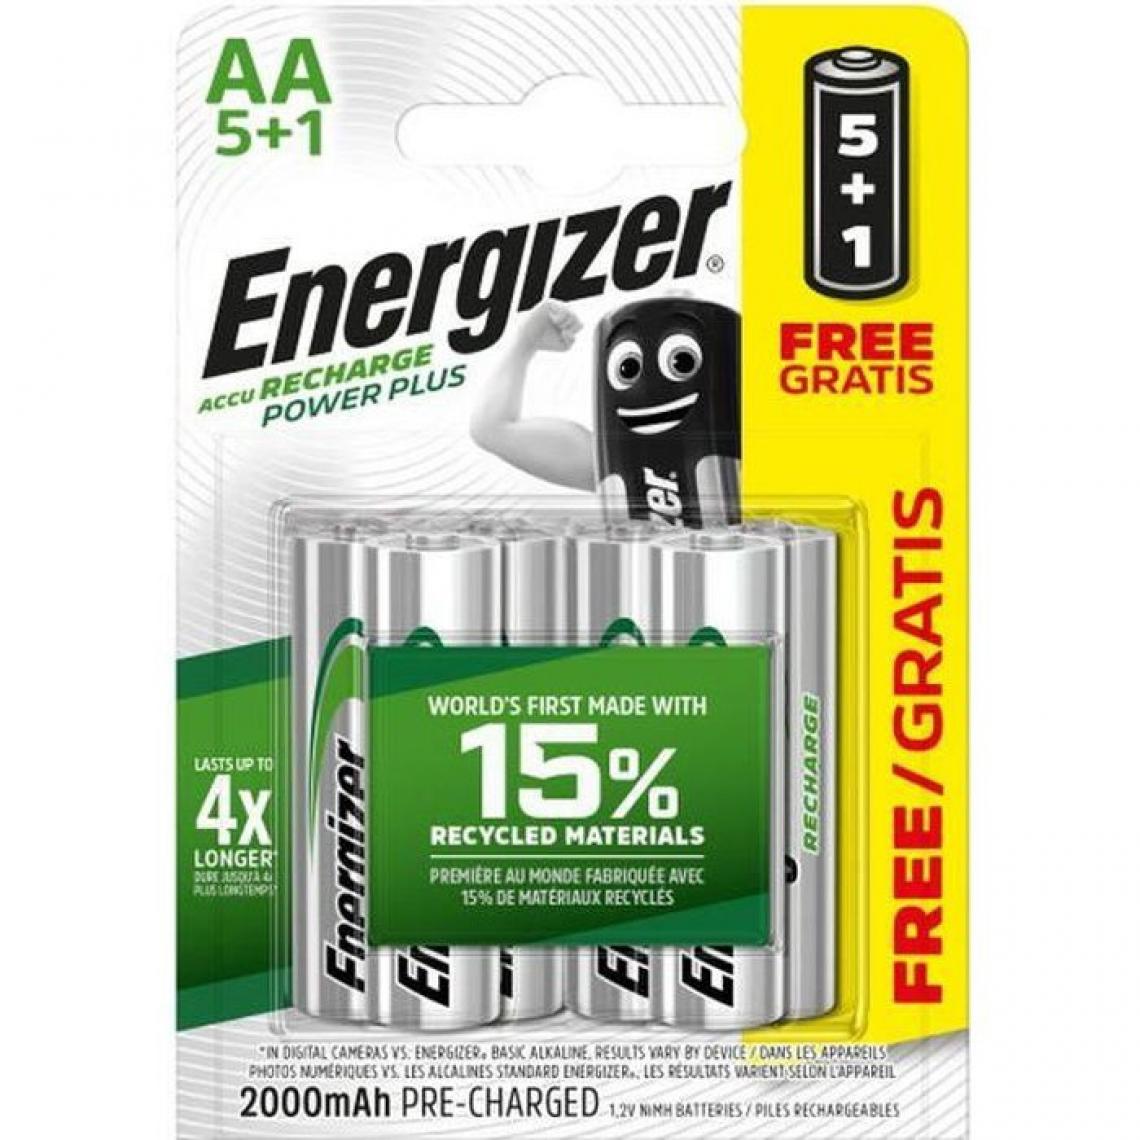 Energizer - ENERGIZER Power Plus Rech AA BP6 5+1 - Piles rechargeables